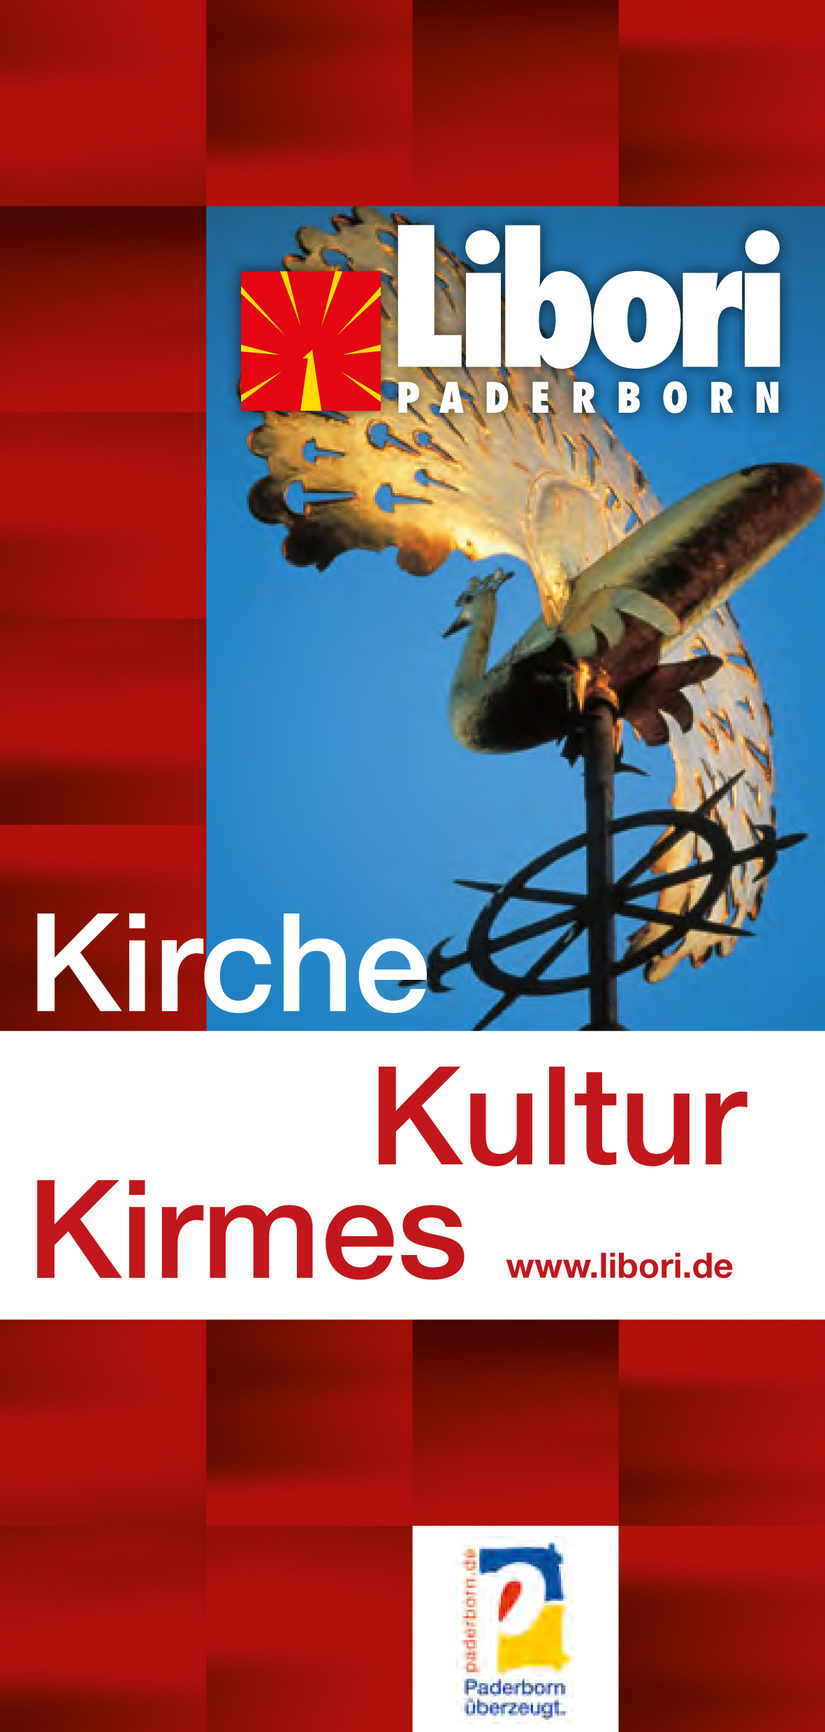 Kirche, Kultur, Kirmes - Libori in Paderborn